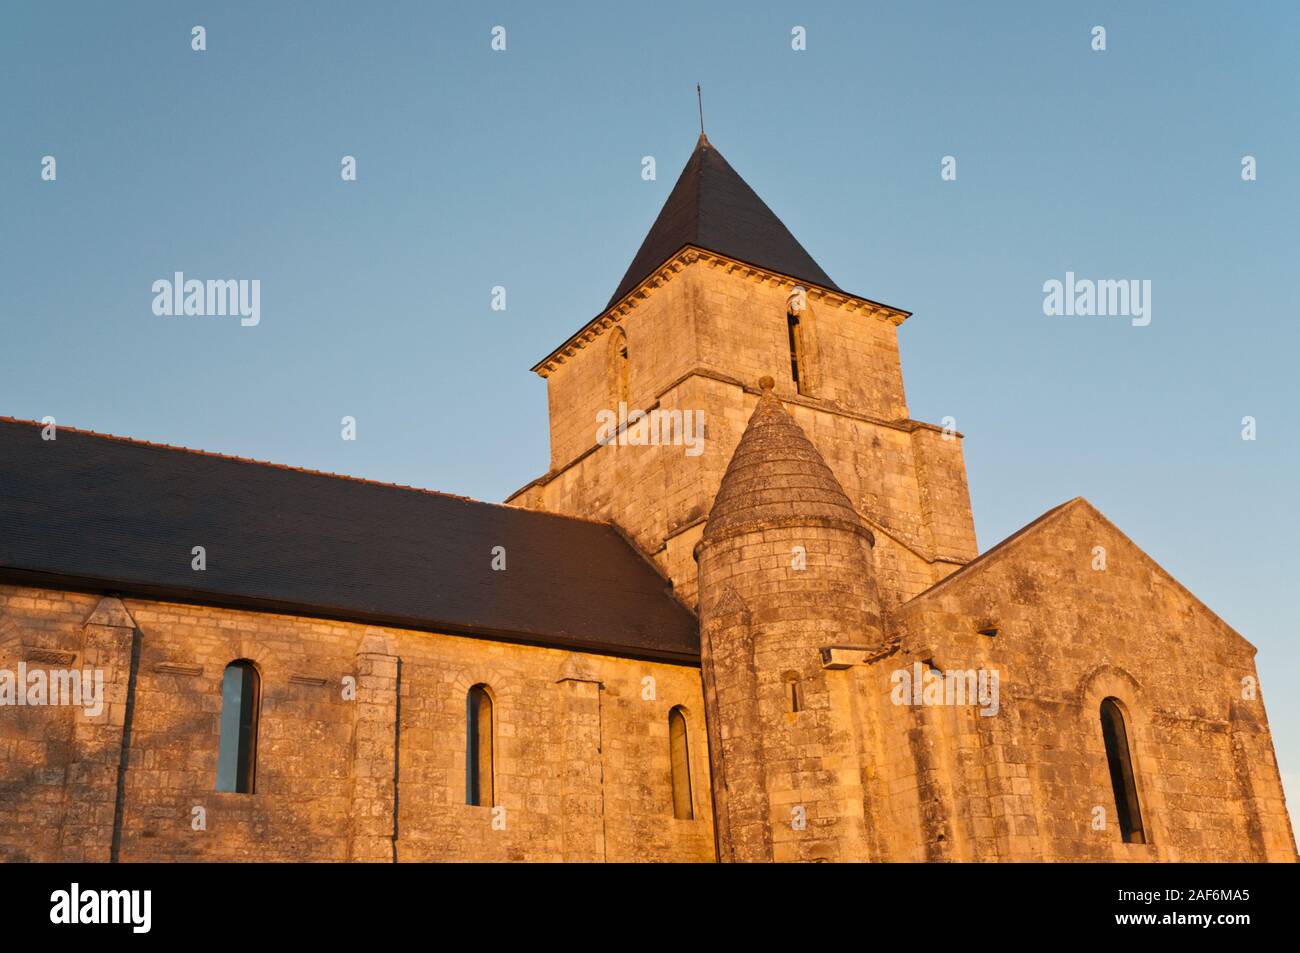 Saint-Savinien roman church at sunset, Melle, Deux-Sevres (79), Nouvelle-Aquitaine region, France. It is a listed historic monument. Stock Photo